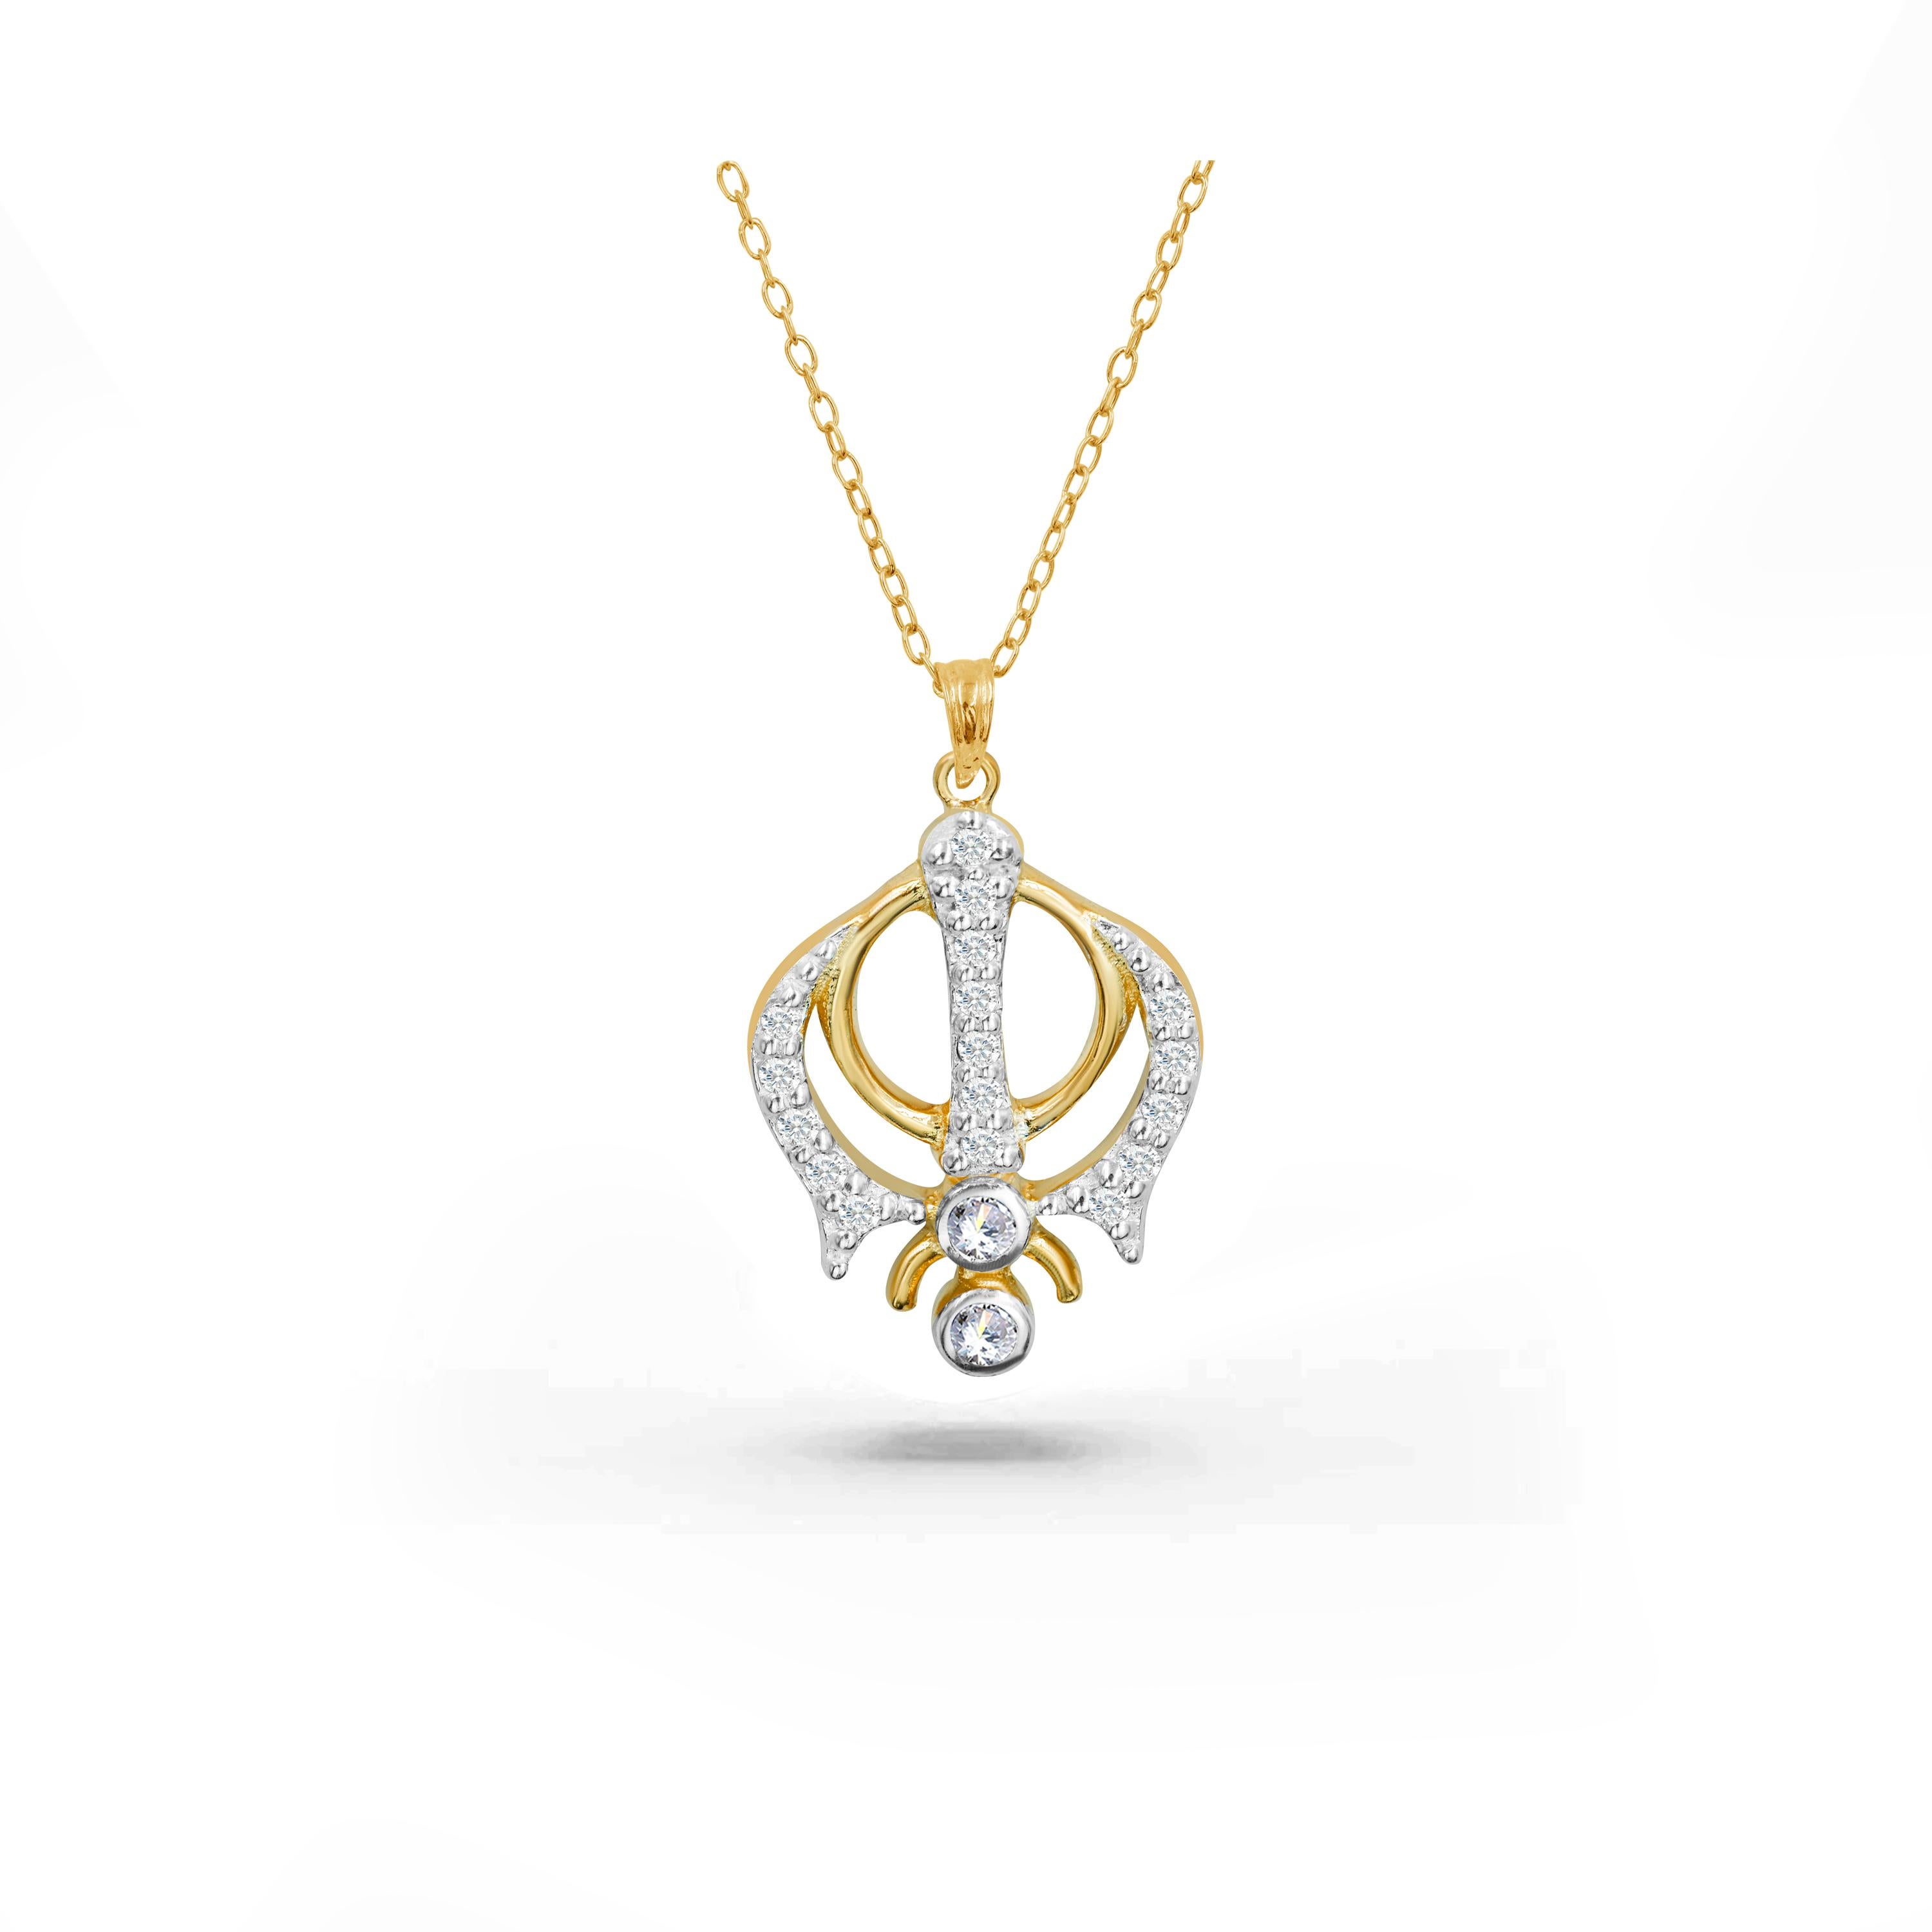 Die handgefertigte Khanda Diamant-Halskette ist perfekt für den Alltag geeignet, um inneren Frieden und Spiritualität zu vermitteln. Diese wunderschöne religiöse Sikhismus-Halskette ist ein echtes Schmuckstück. Diese Sikh-Halskette kann in der